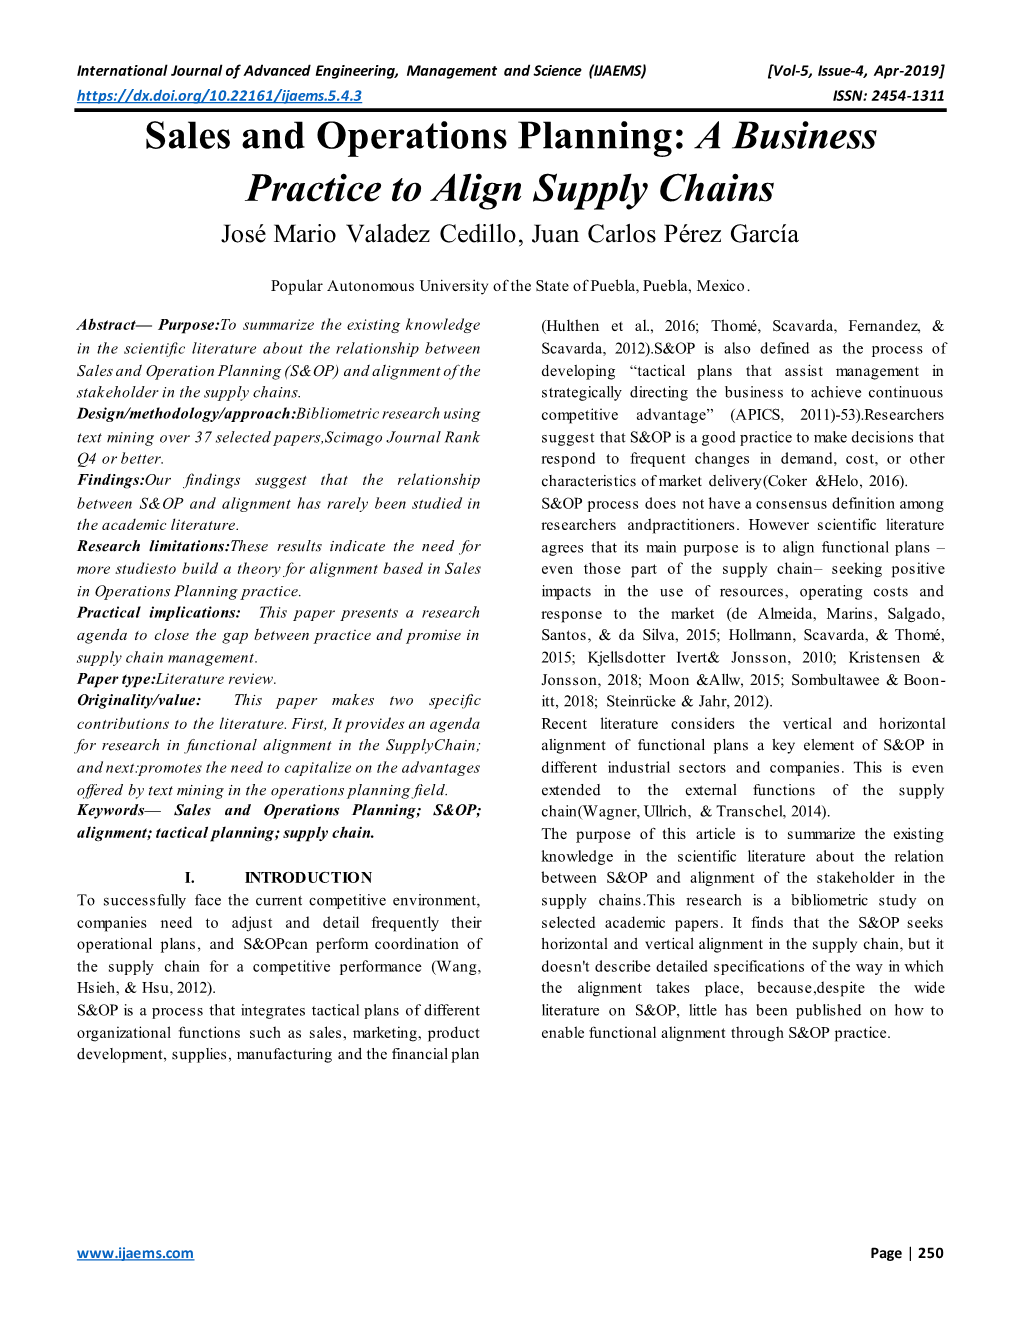 Sales and Operations Planning: a Business Practice to Align Supply Chains José Mario Valadez Cedillo, Juan Carlos Pérez García